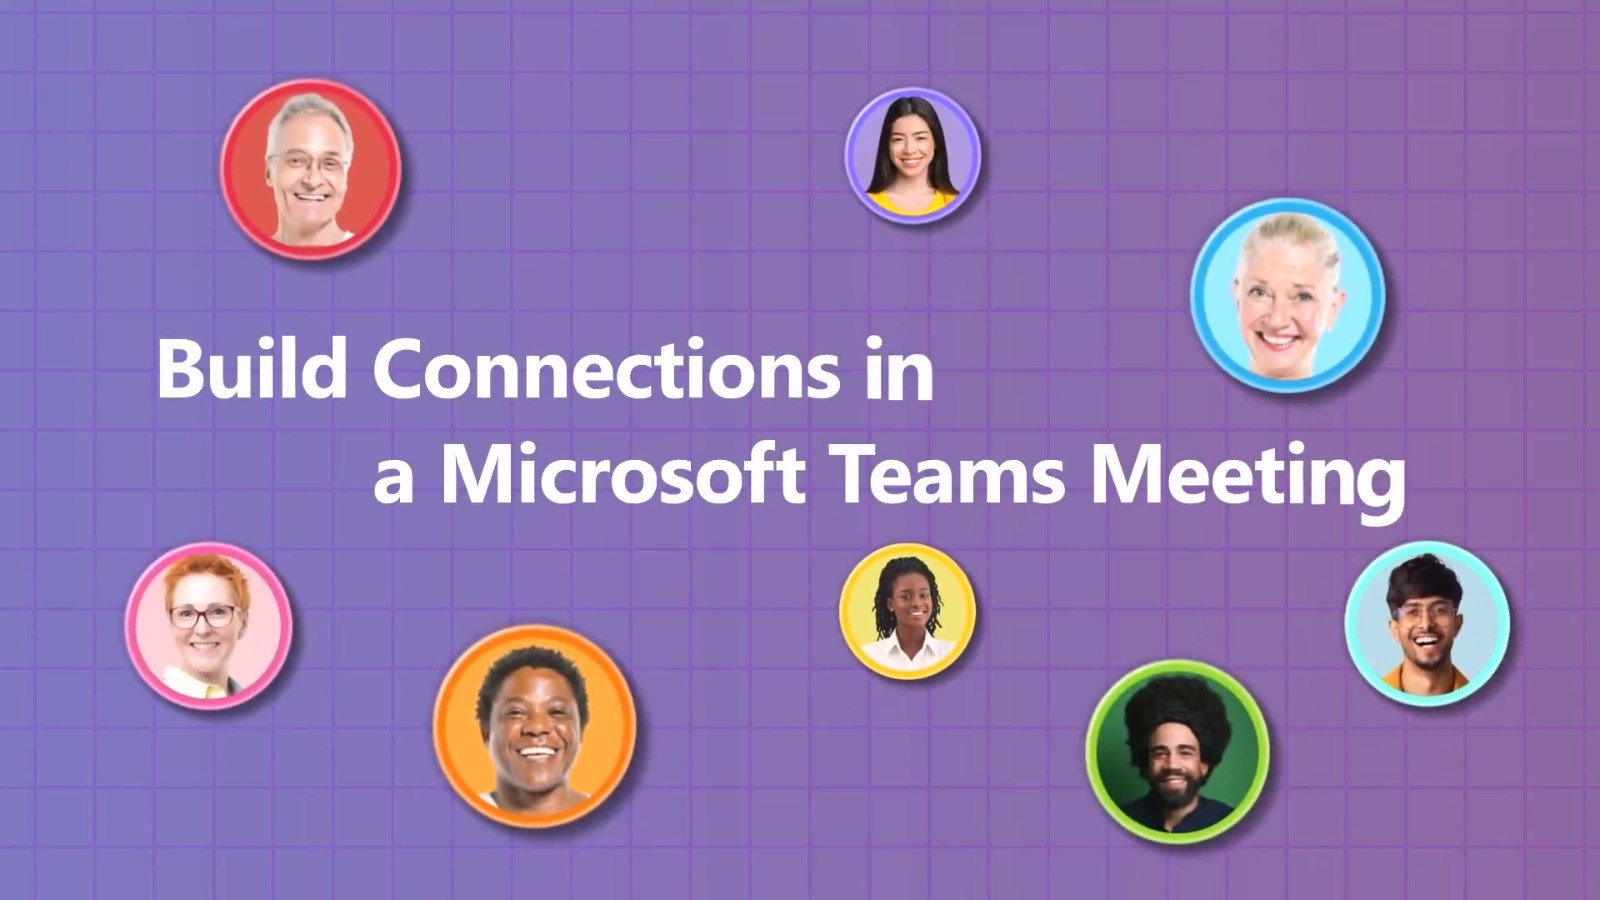 微软为会议软件添加游戏应用 可与同事一起玩《扫雷》